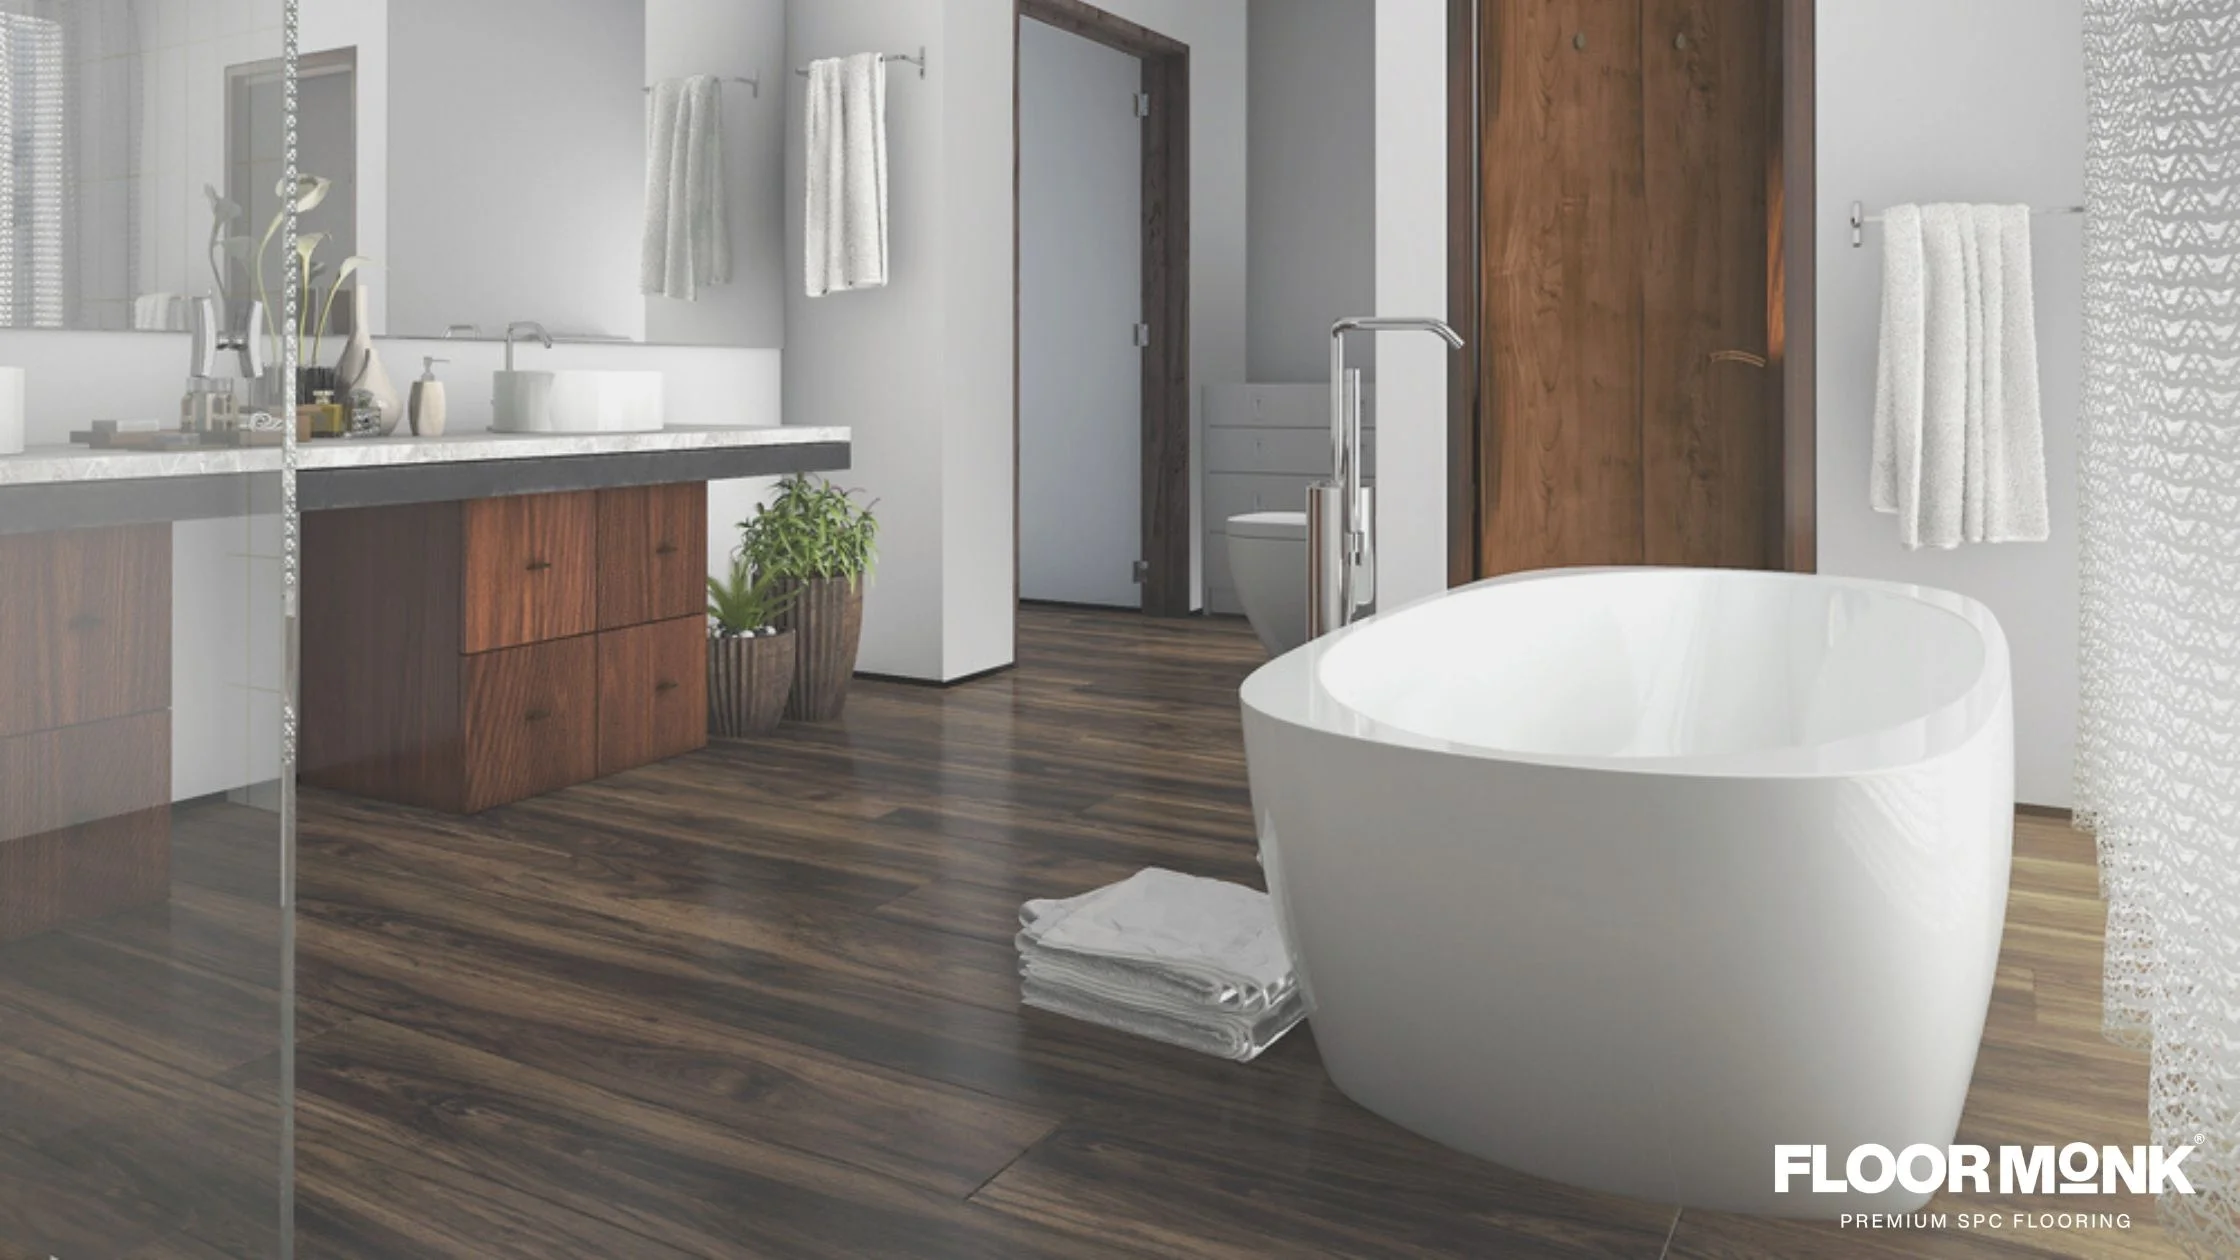 Bathroom Waterproofing and Wood Flooring